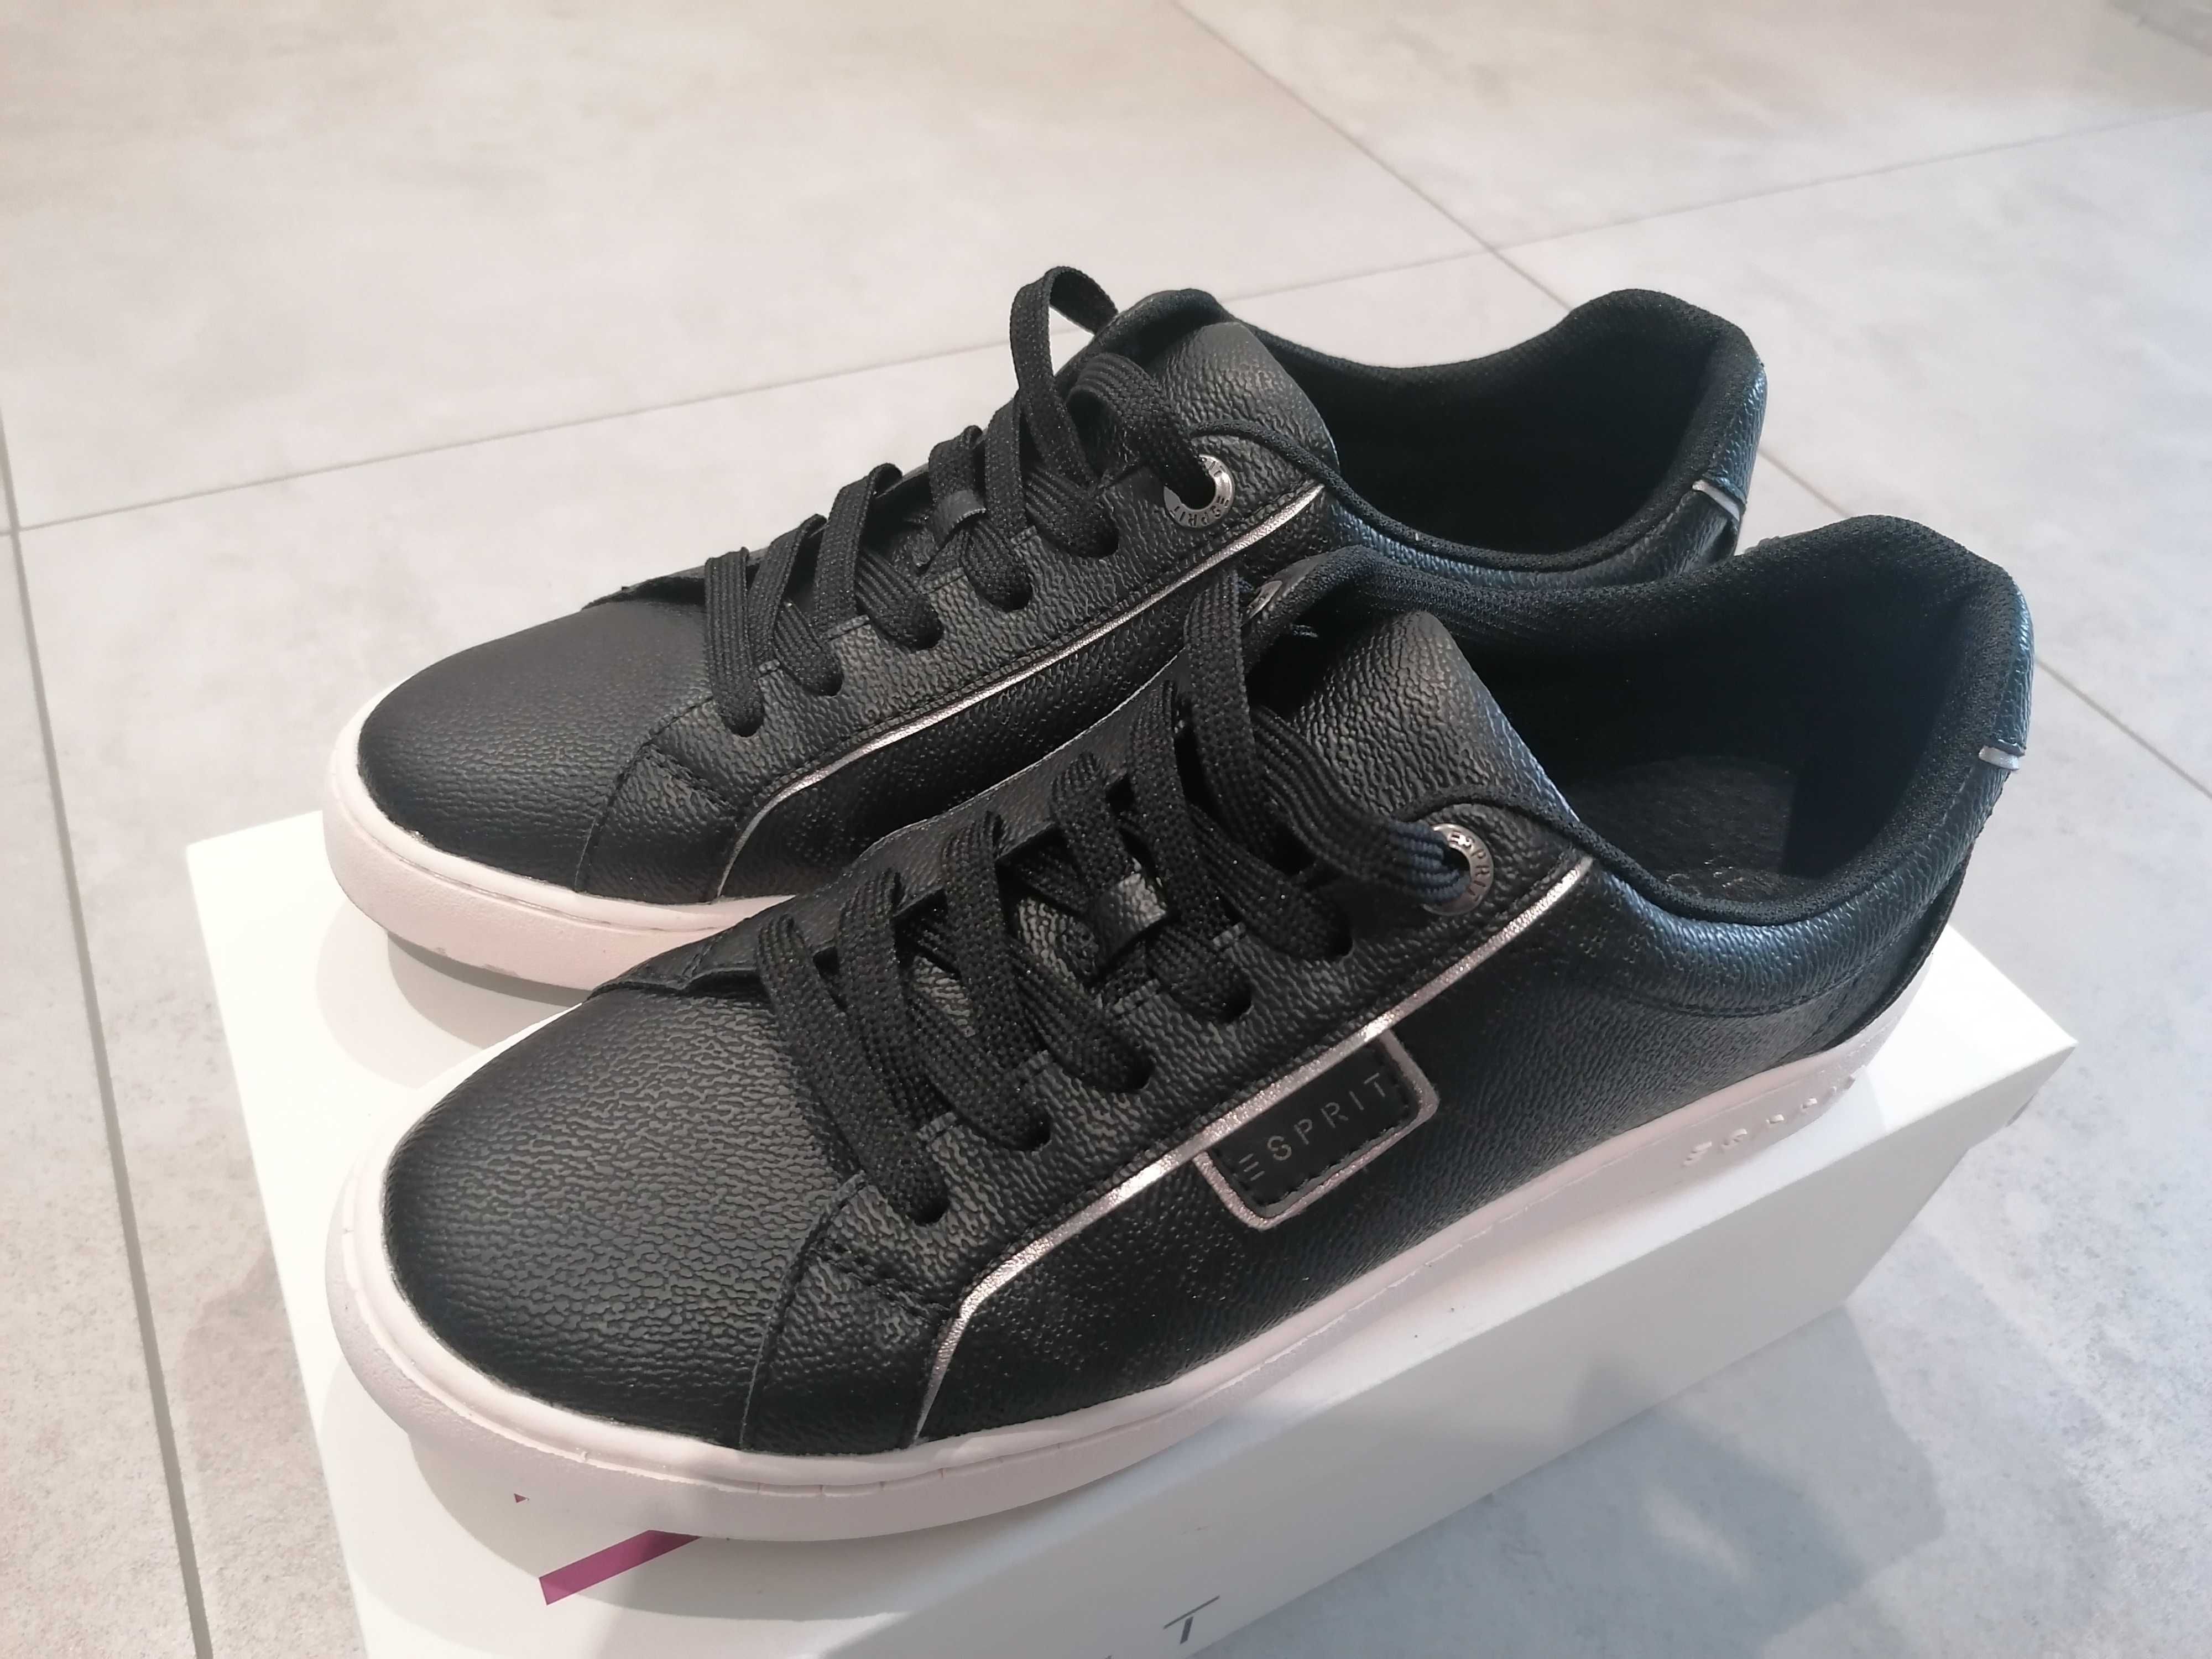 Esprit buty sneakersy czarne r. 39 38 jak nowe.